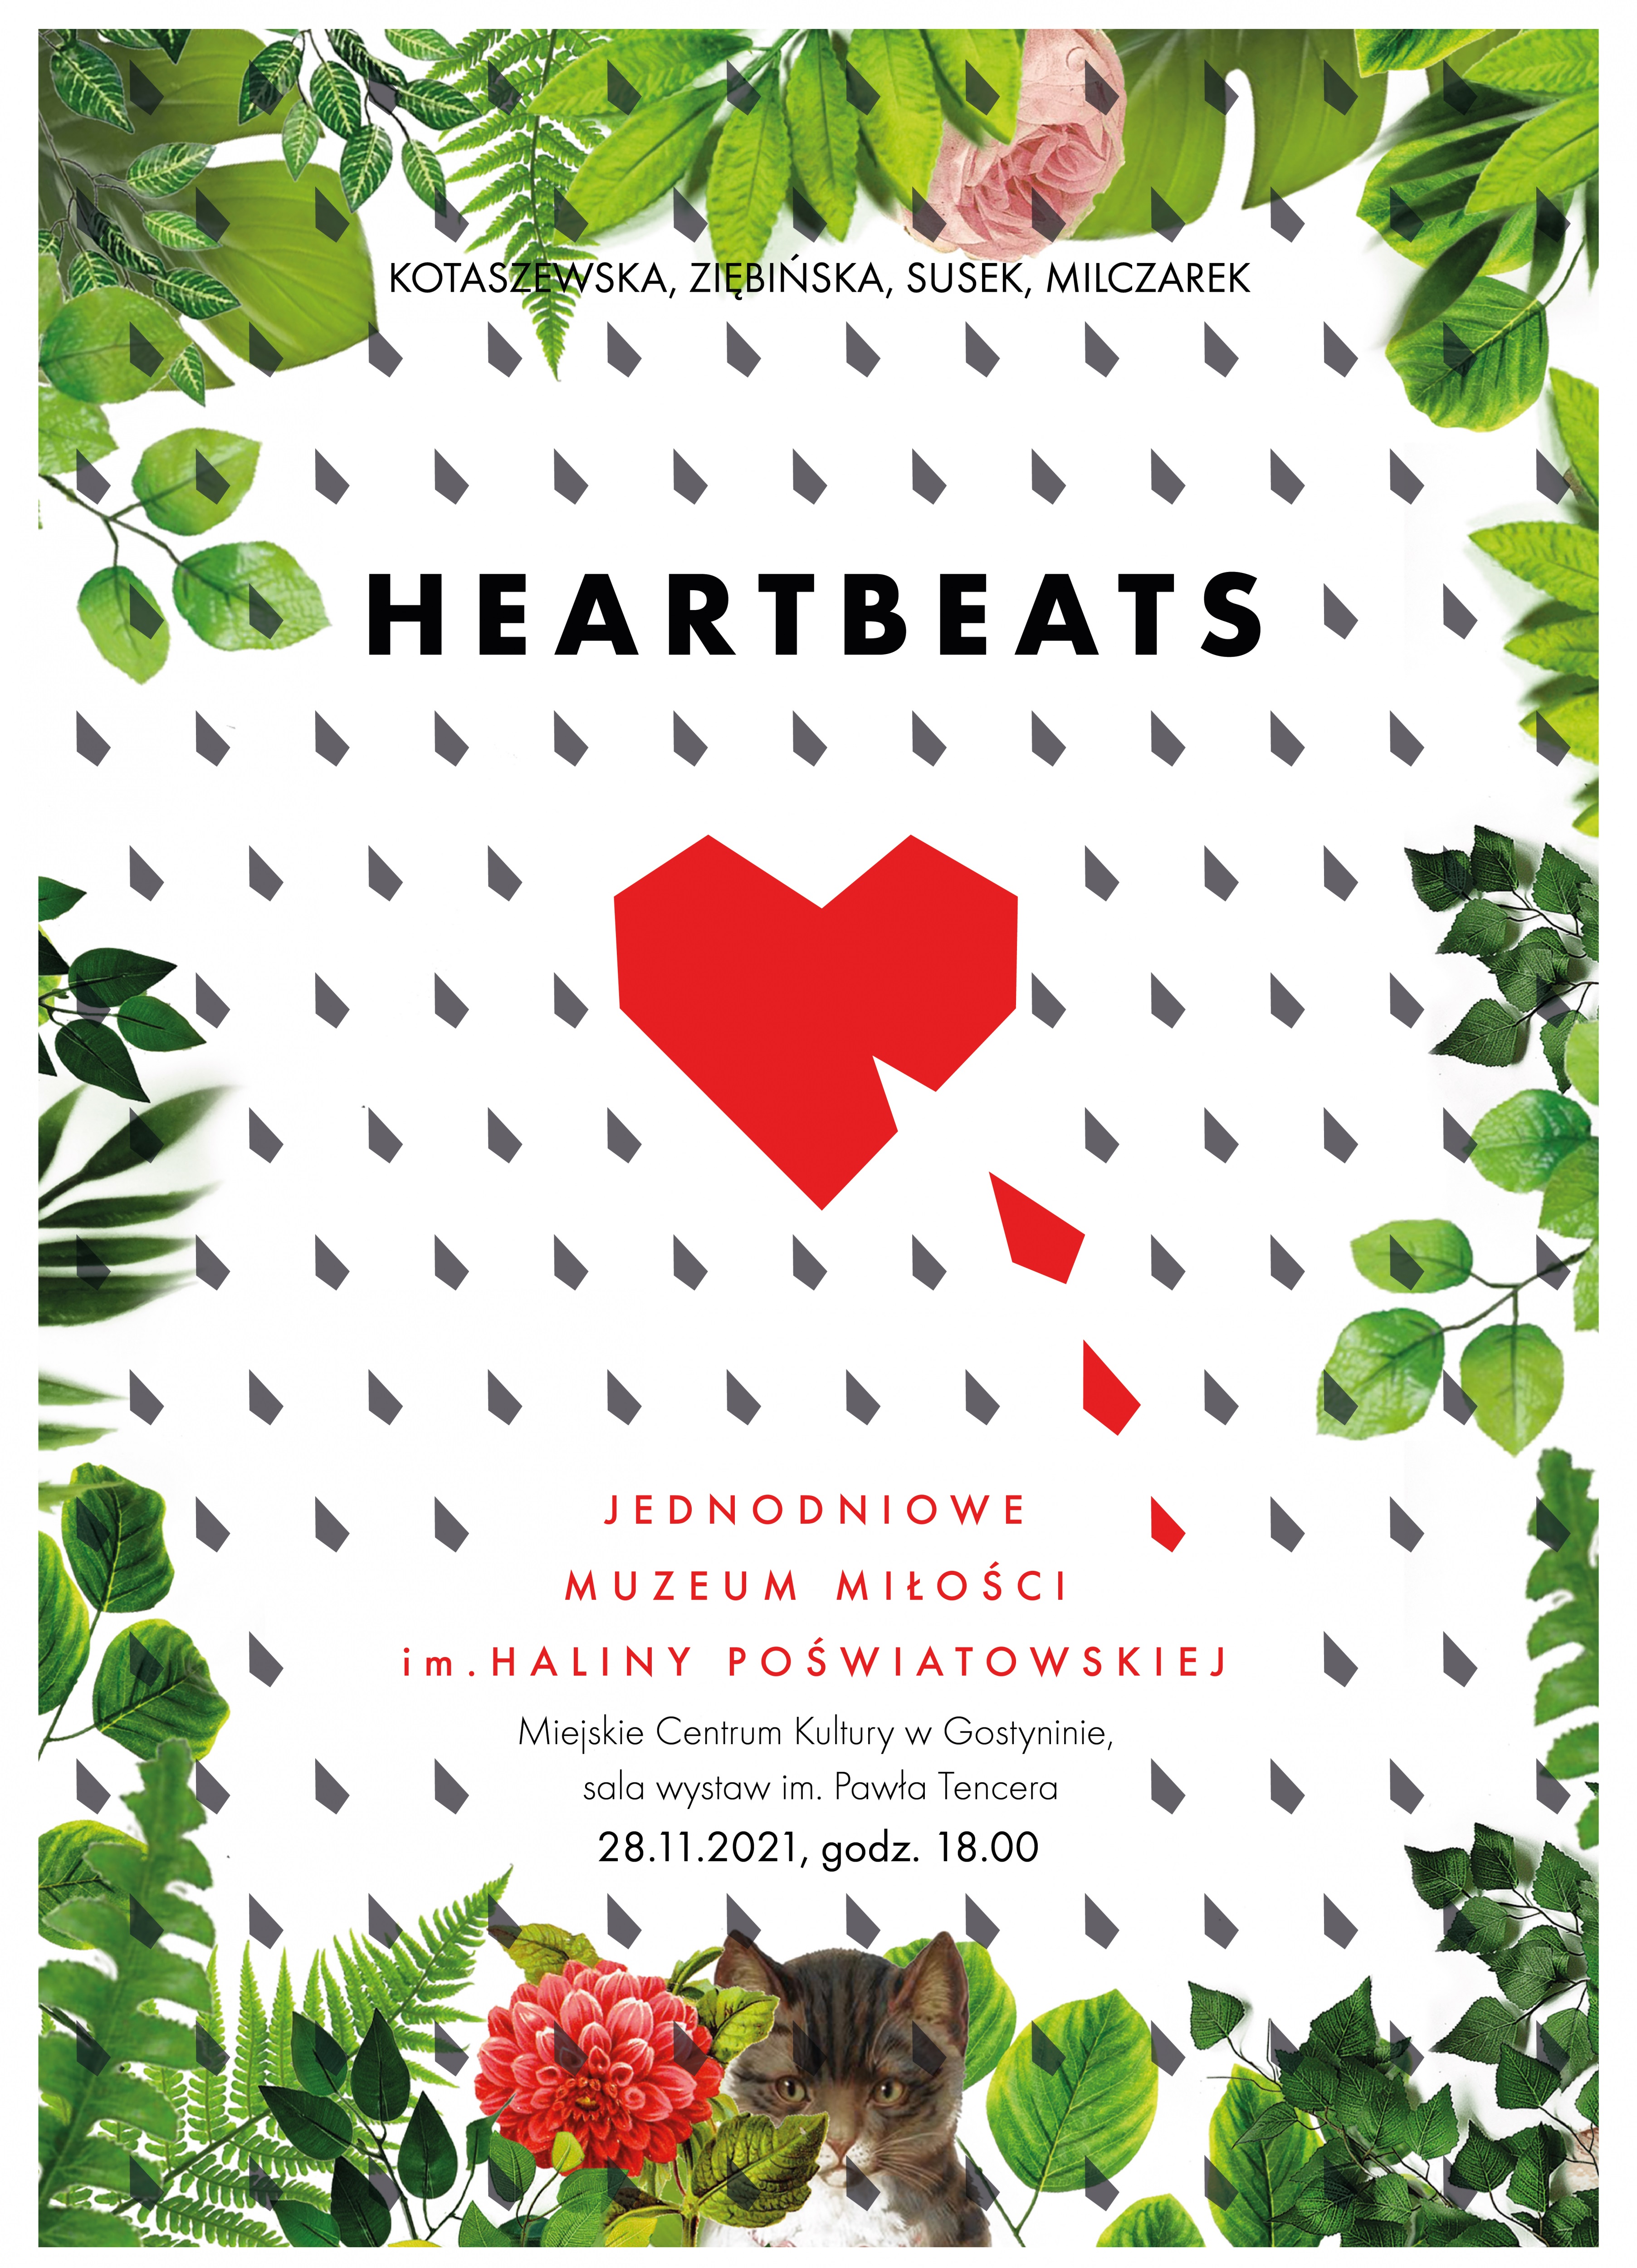 Jednodniowe Muzeum Miłości | Heartbeats